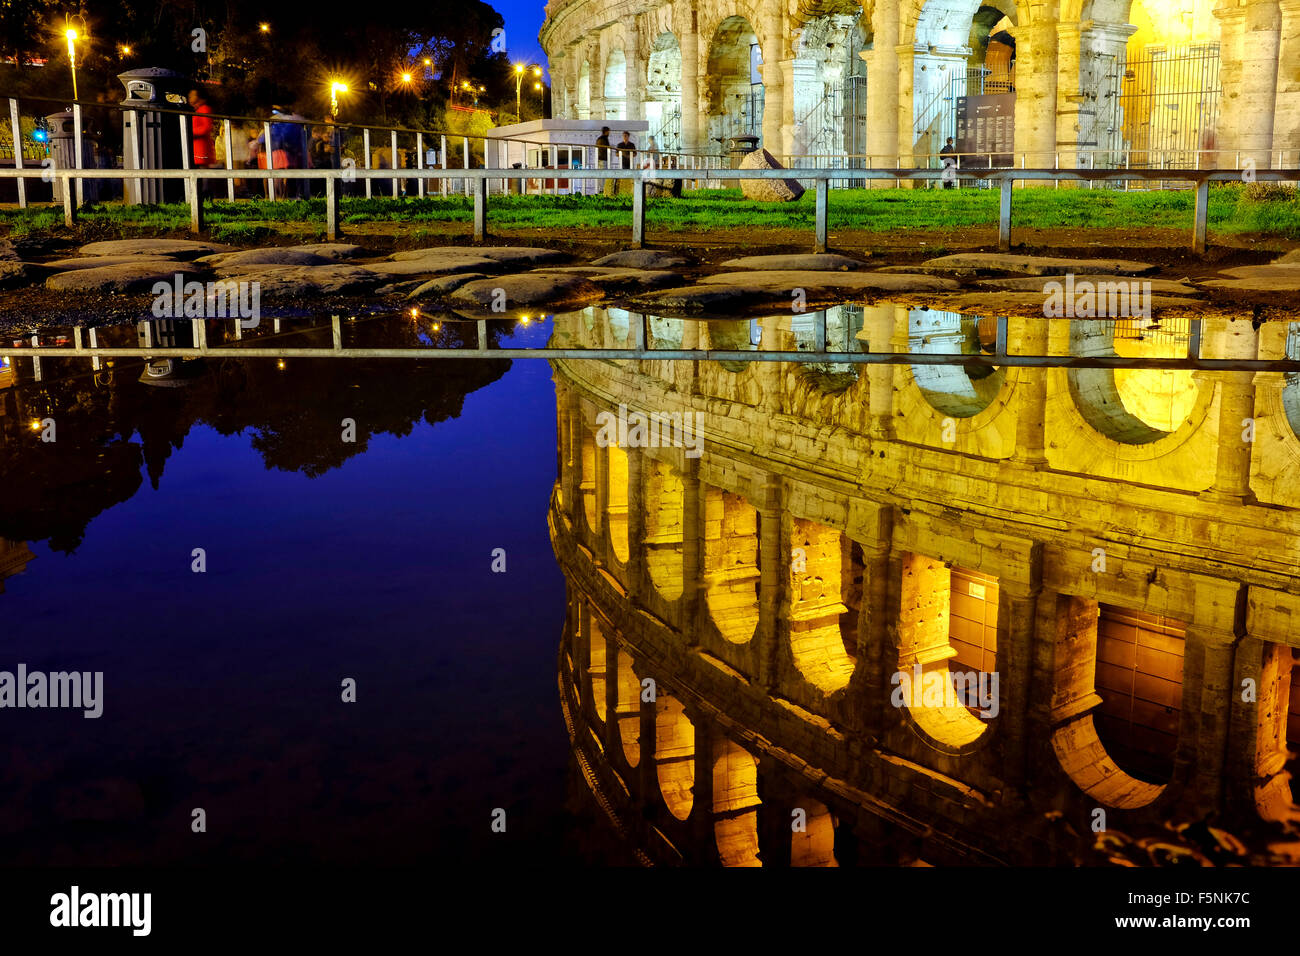 La réflexion du colisée dans l'eau d'une flaque d'eau, Rome Italie Banque D'Images